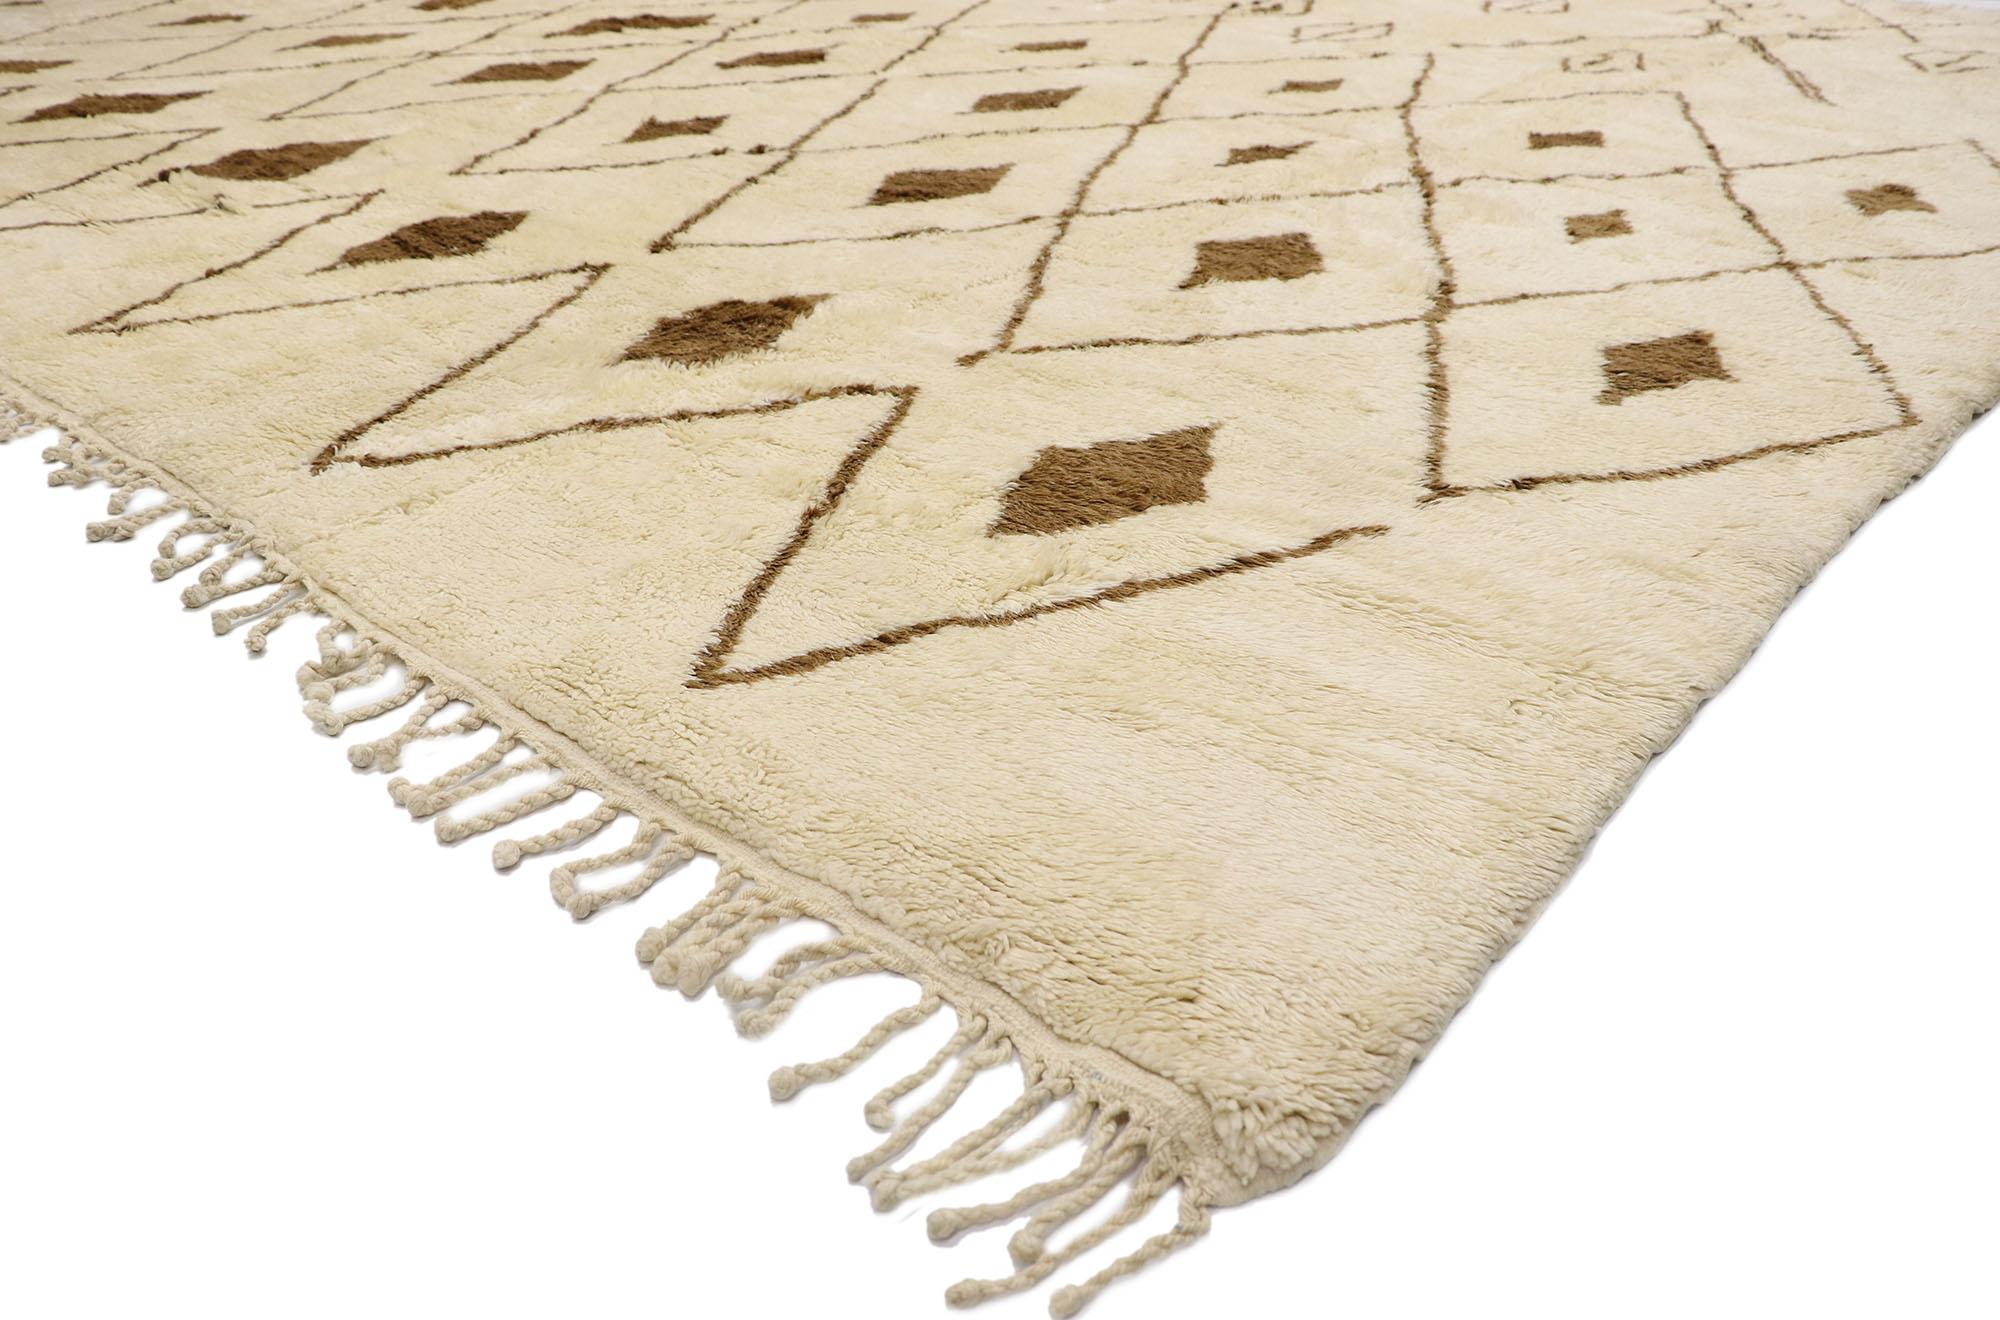 21146 Großer neutraler marokkanischer Berberteppich, 14'11 x 15'10.
Dieser handgeknüpfte marokkanische Berberteppich aus Wabi-Sabi mit seinen unglaublichen Details und seiner Textur verleiht diesem Teppich einen kuratierten Used-Look, der sich